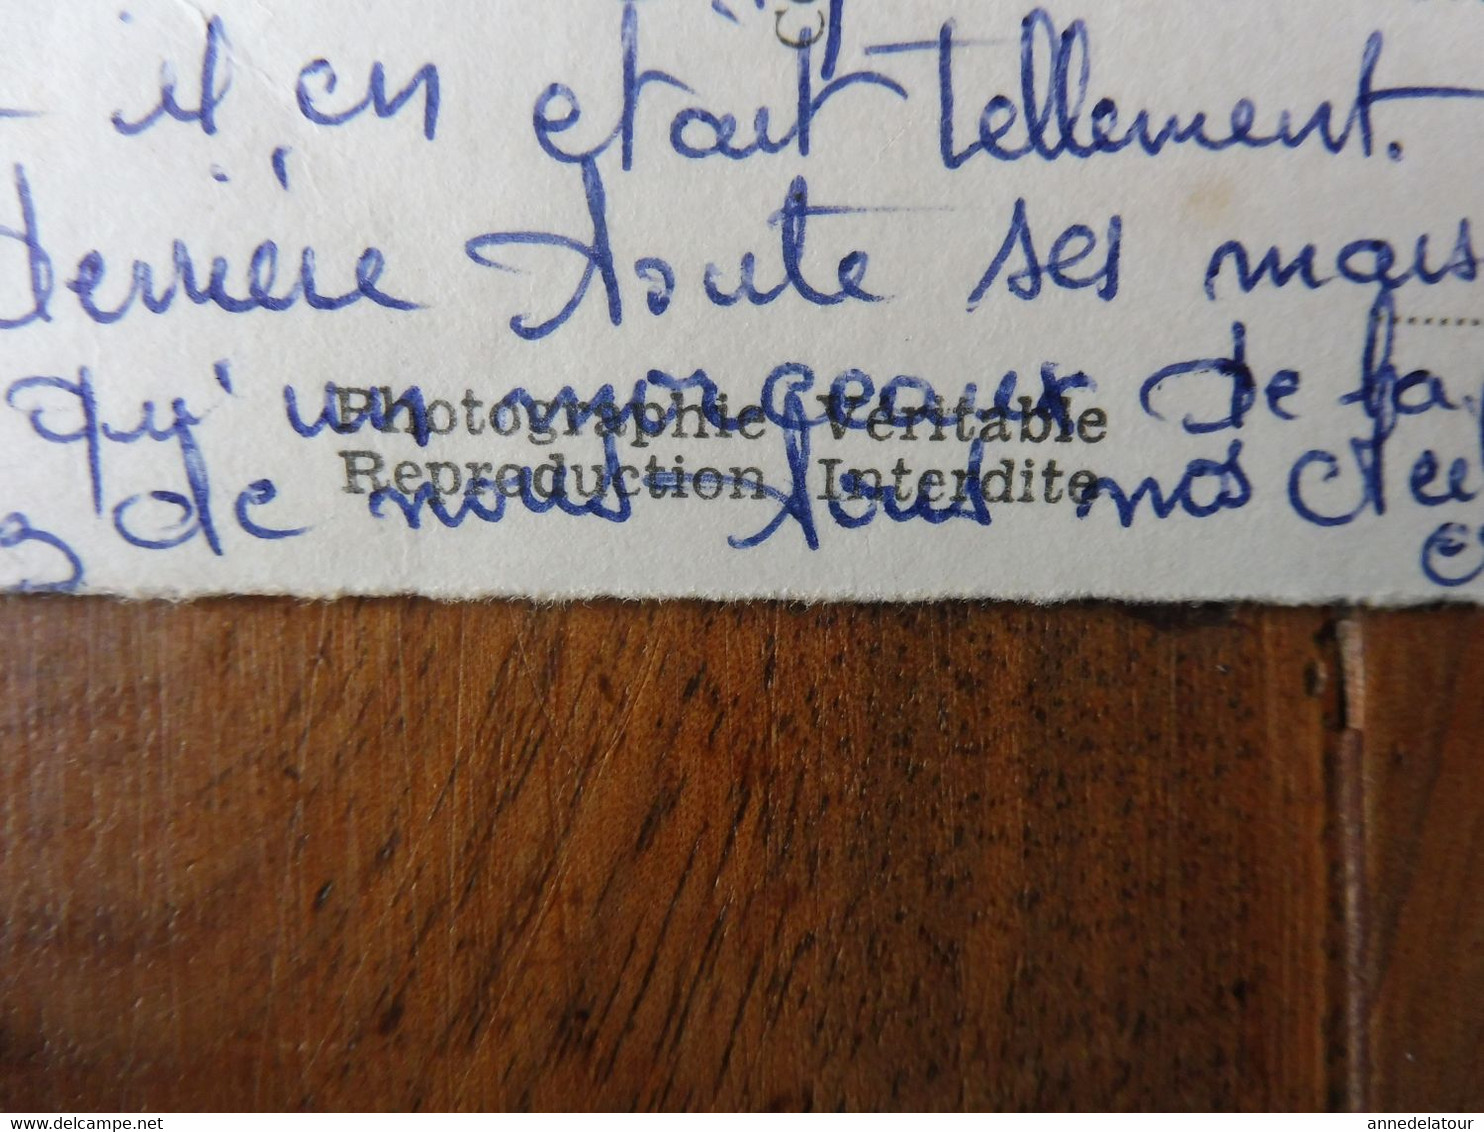 Carte Postale nominative HÔTEL de la GARE , propriétaire Jacquier à St- Germain-au-Mont-d'Or